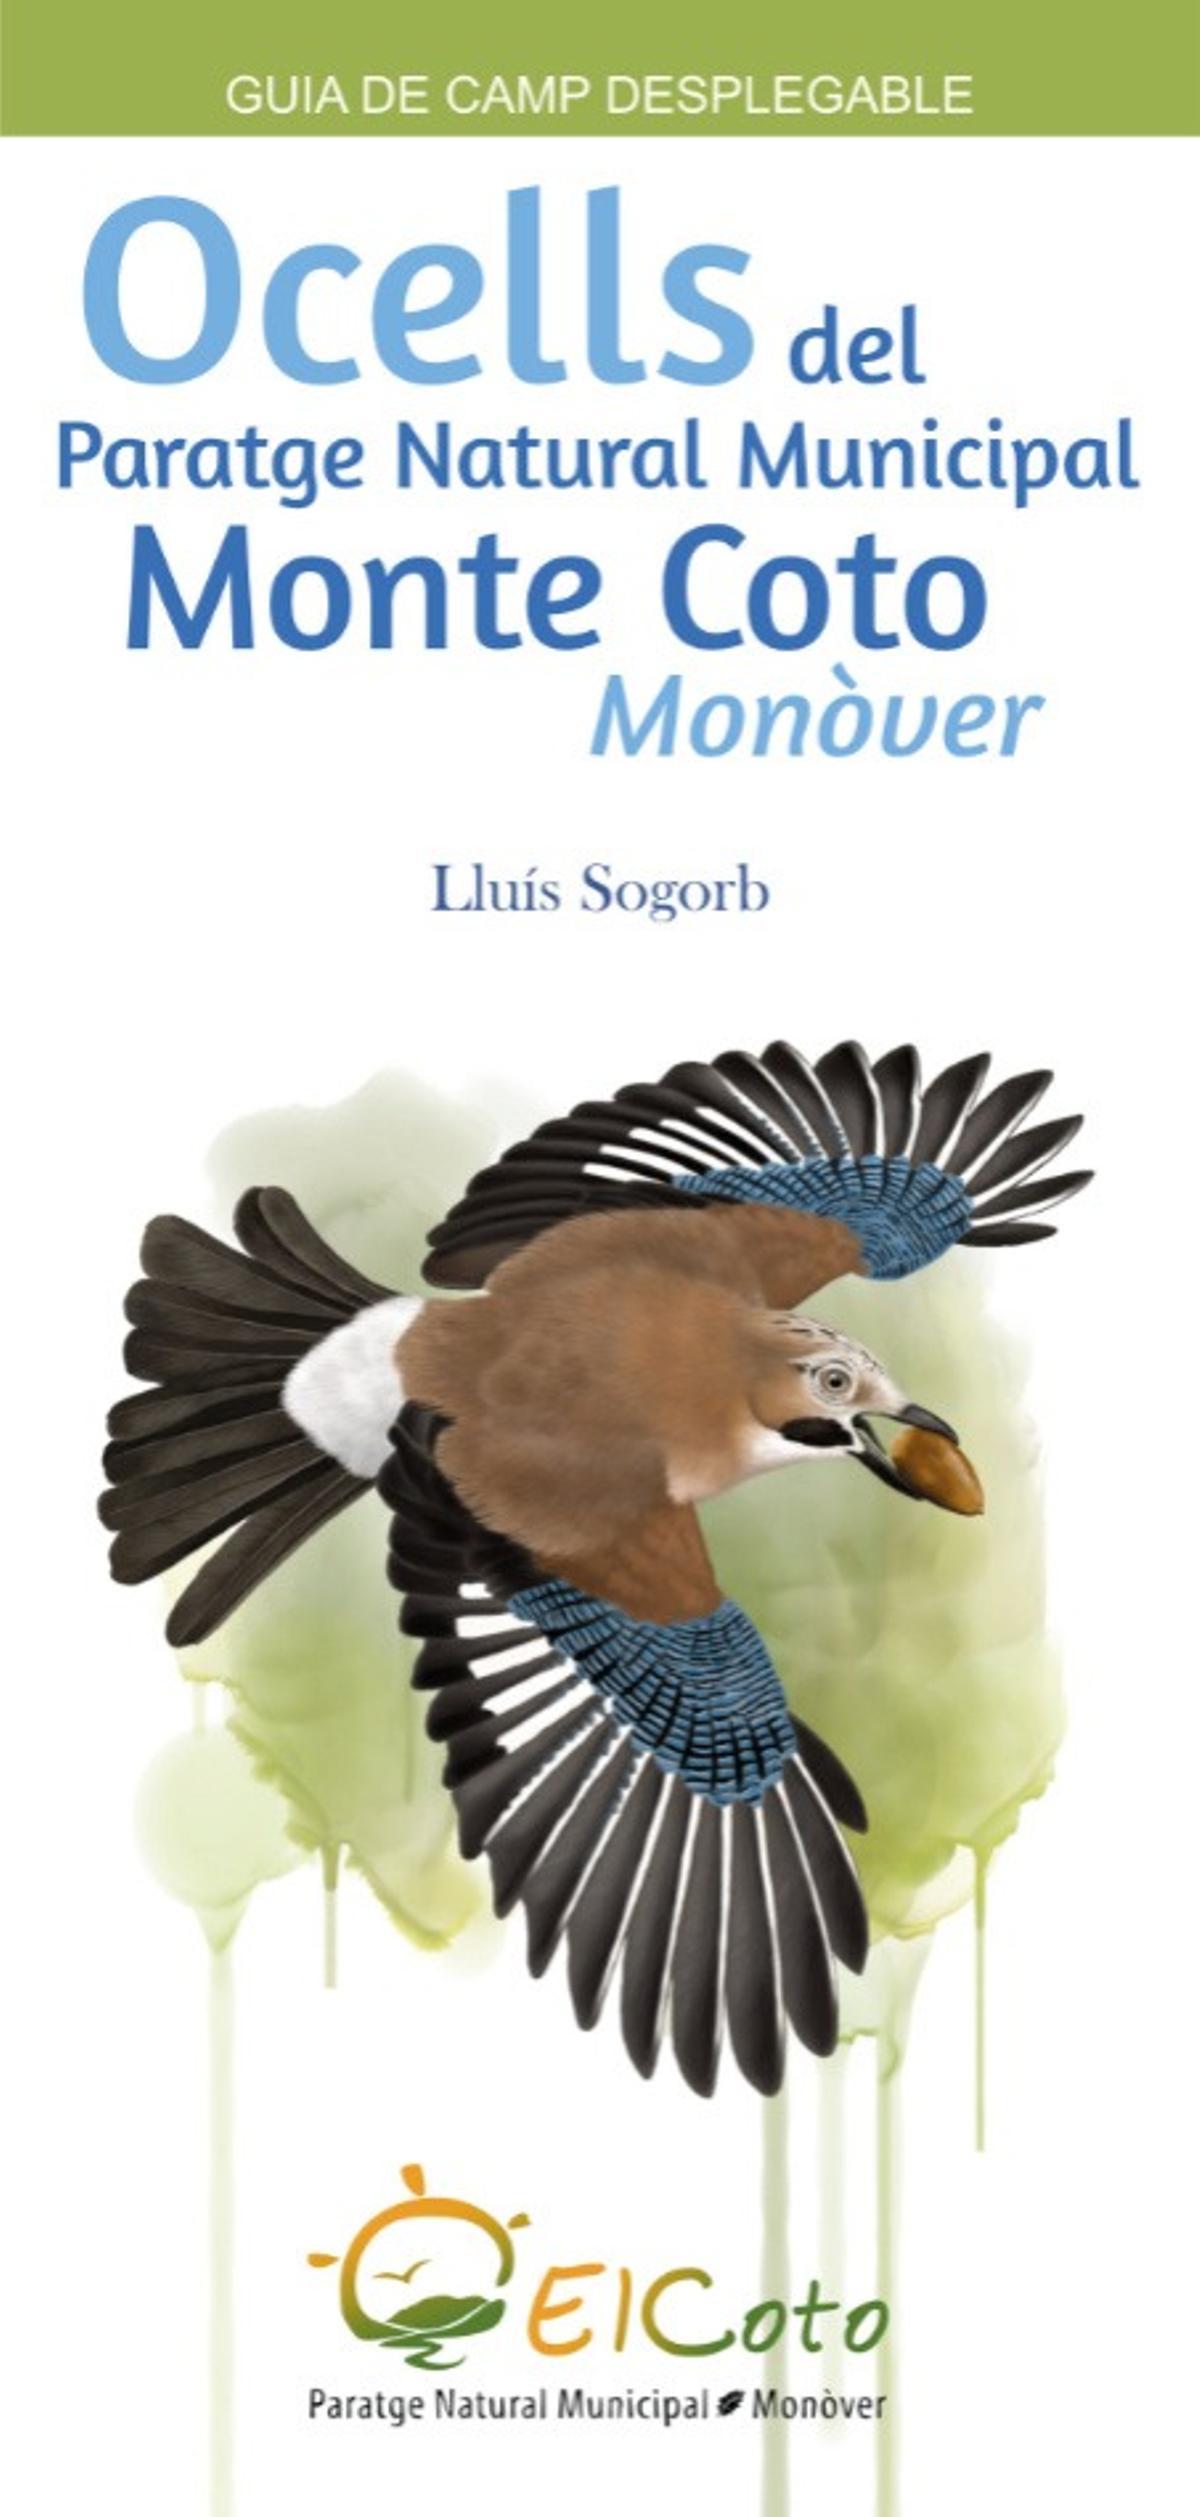 La guía de aves elaborada por Lluís Sogorb en el Monte Coto de Monóvar.